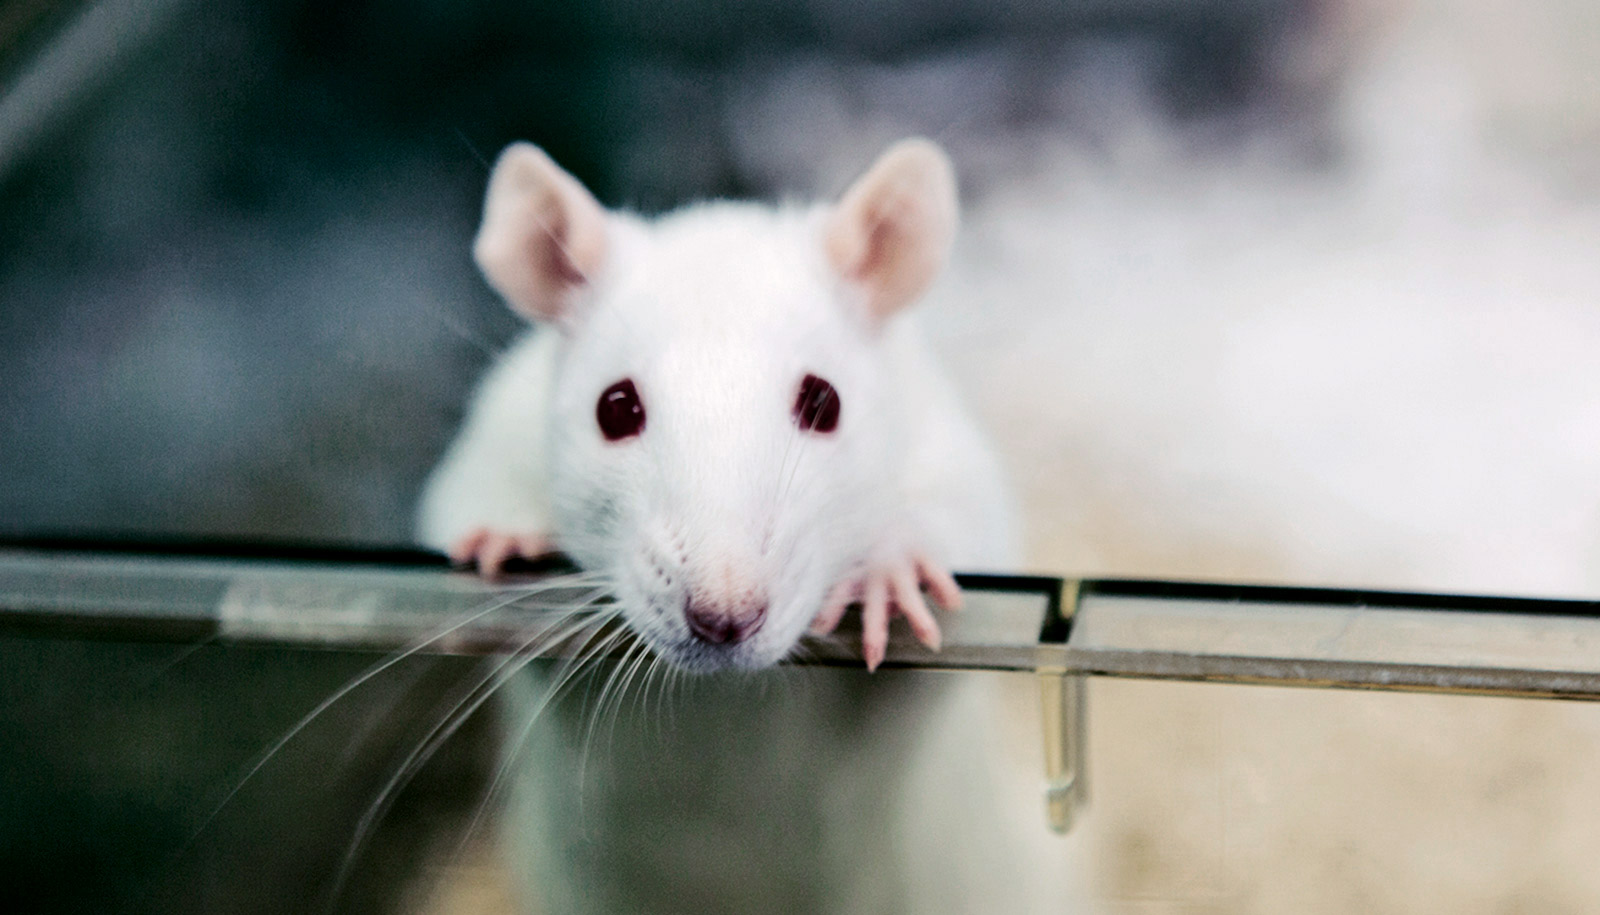 Neuron tikus berkomunikasi melalui internet dengan sel buatan